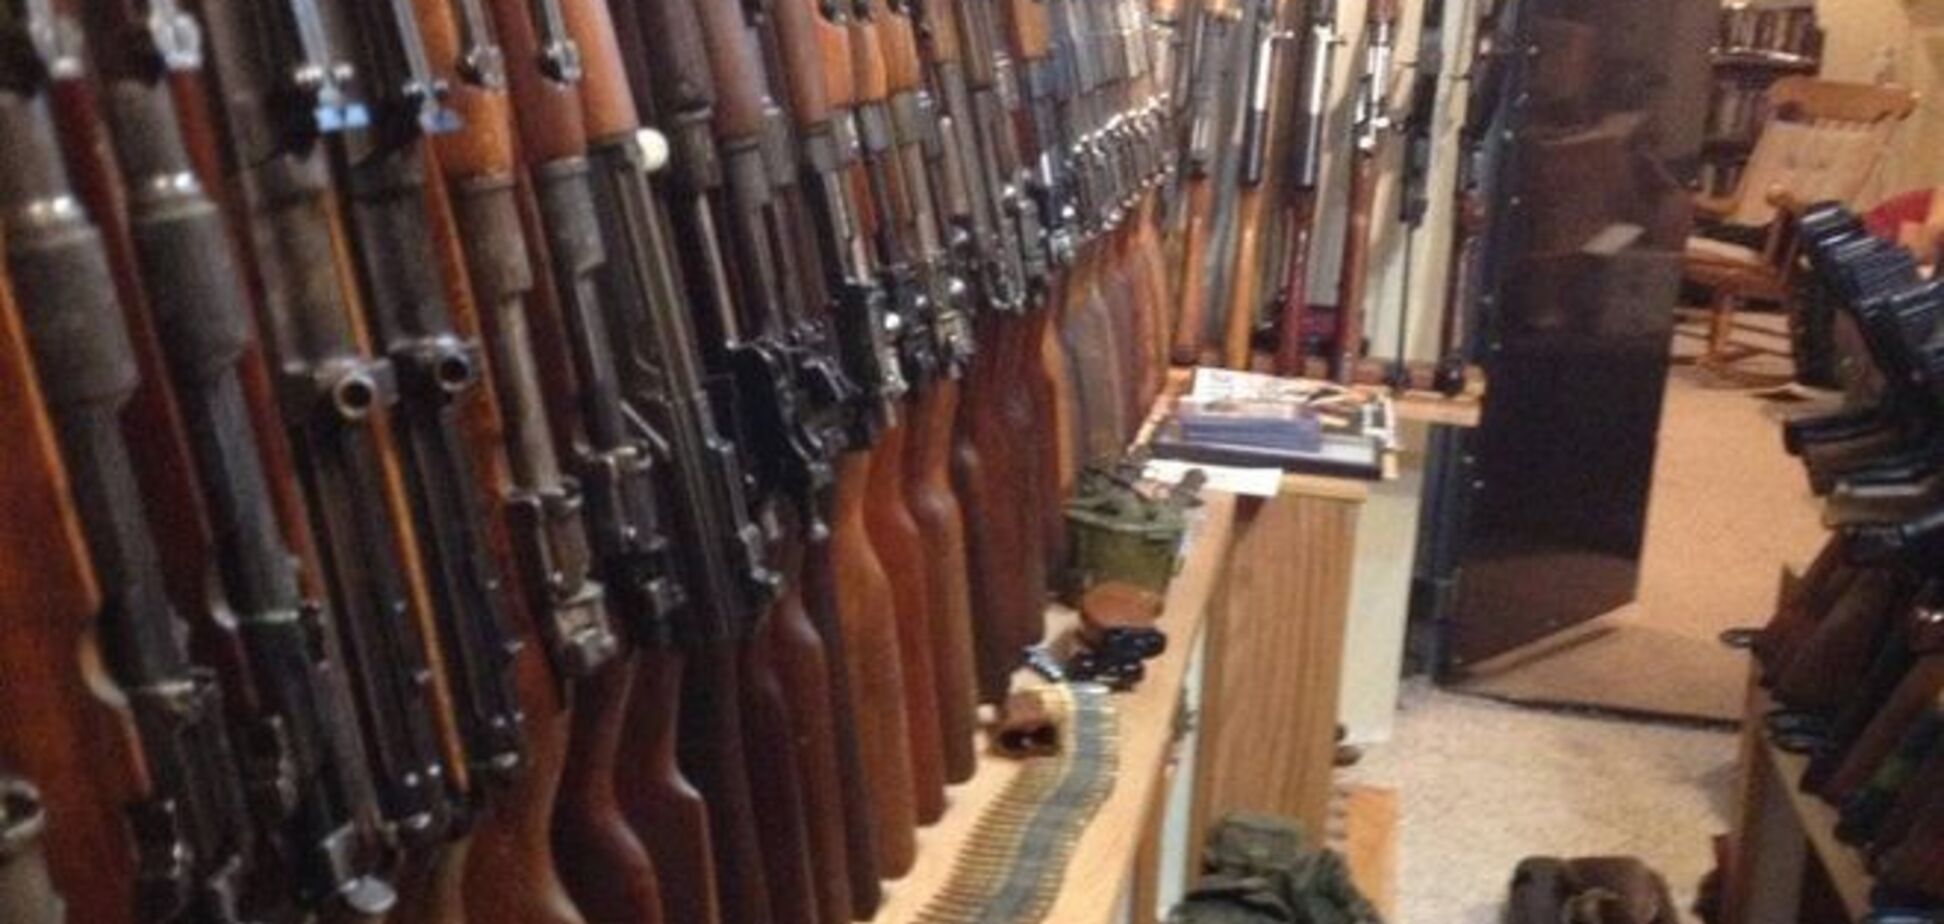 Сотрудники пенитенциарной службы Донецка подорвали весь арсенал оружия